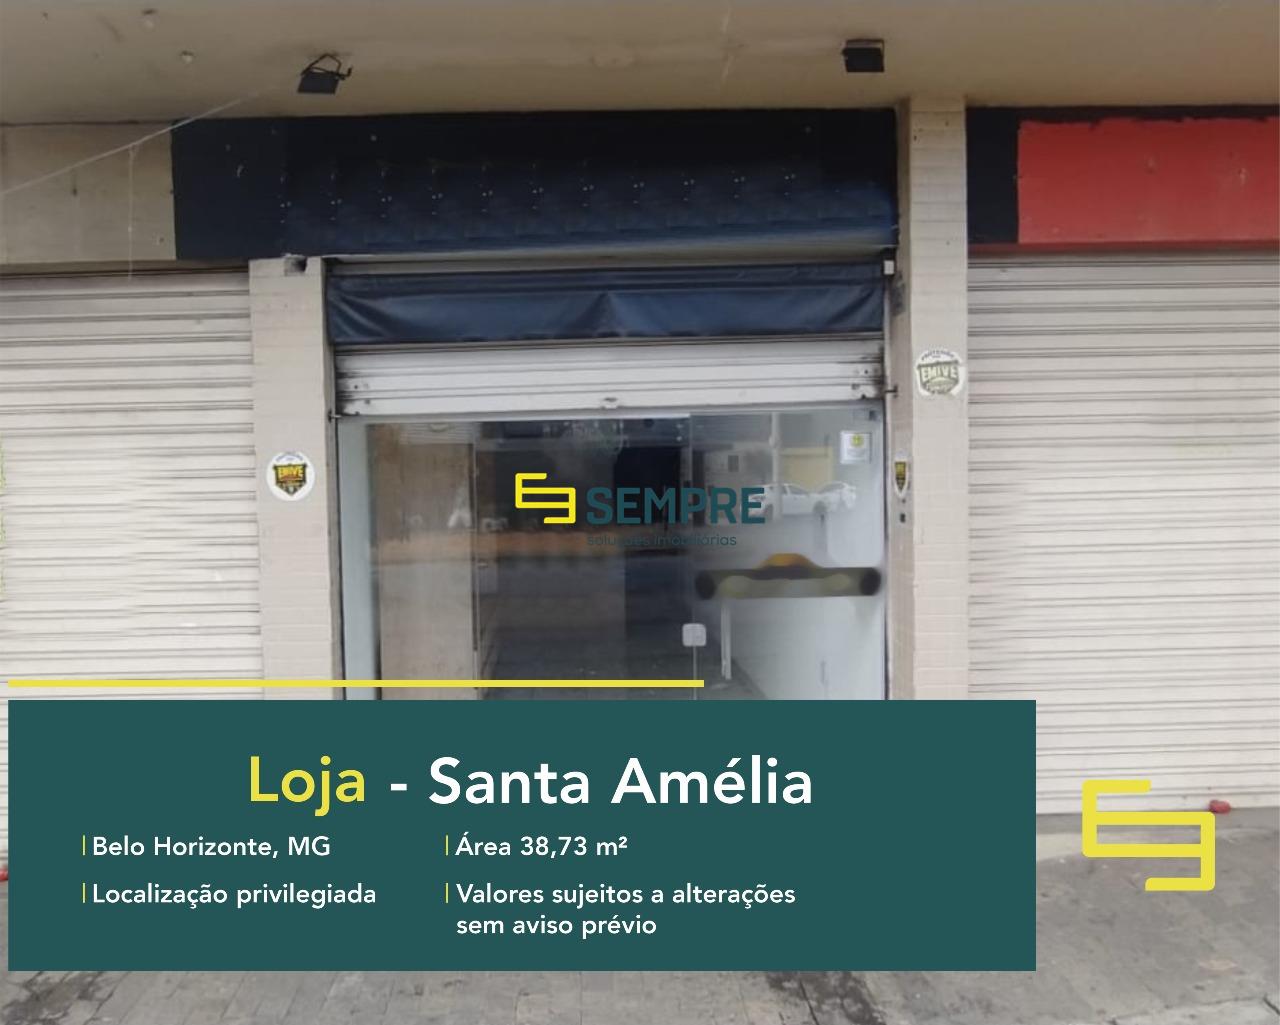 Locação de loja no Santa Amélia com excelente localização. O estabelecimento comercial para alugar, conta sobretudo, com área de 38,73 m².